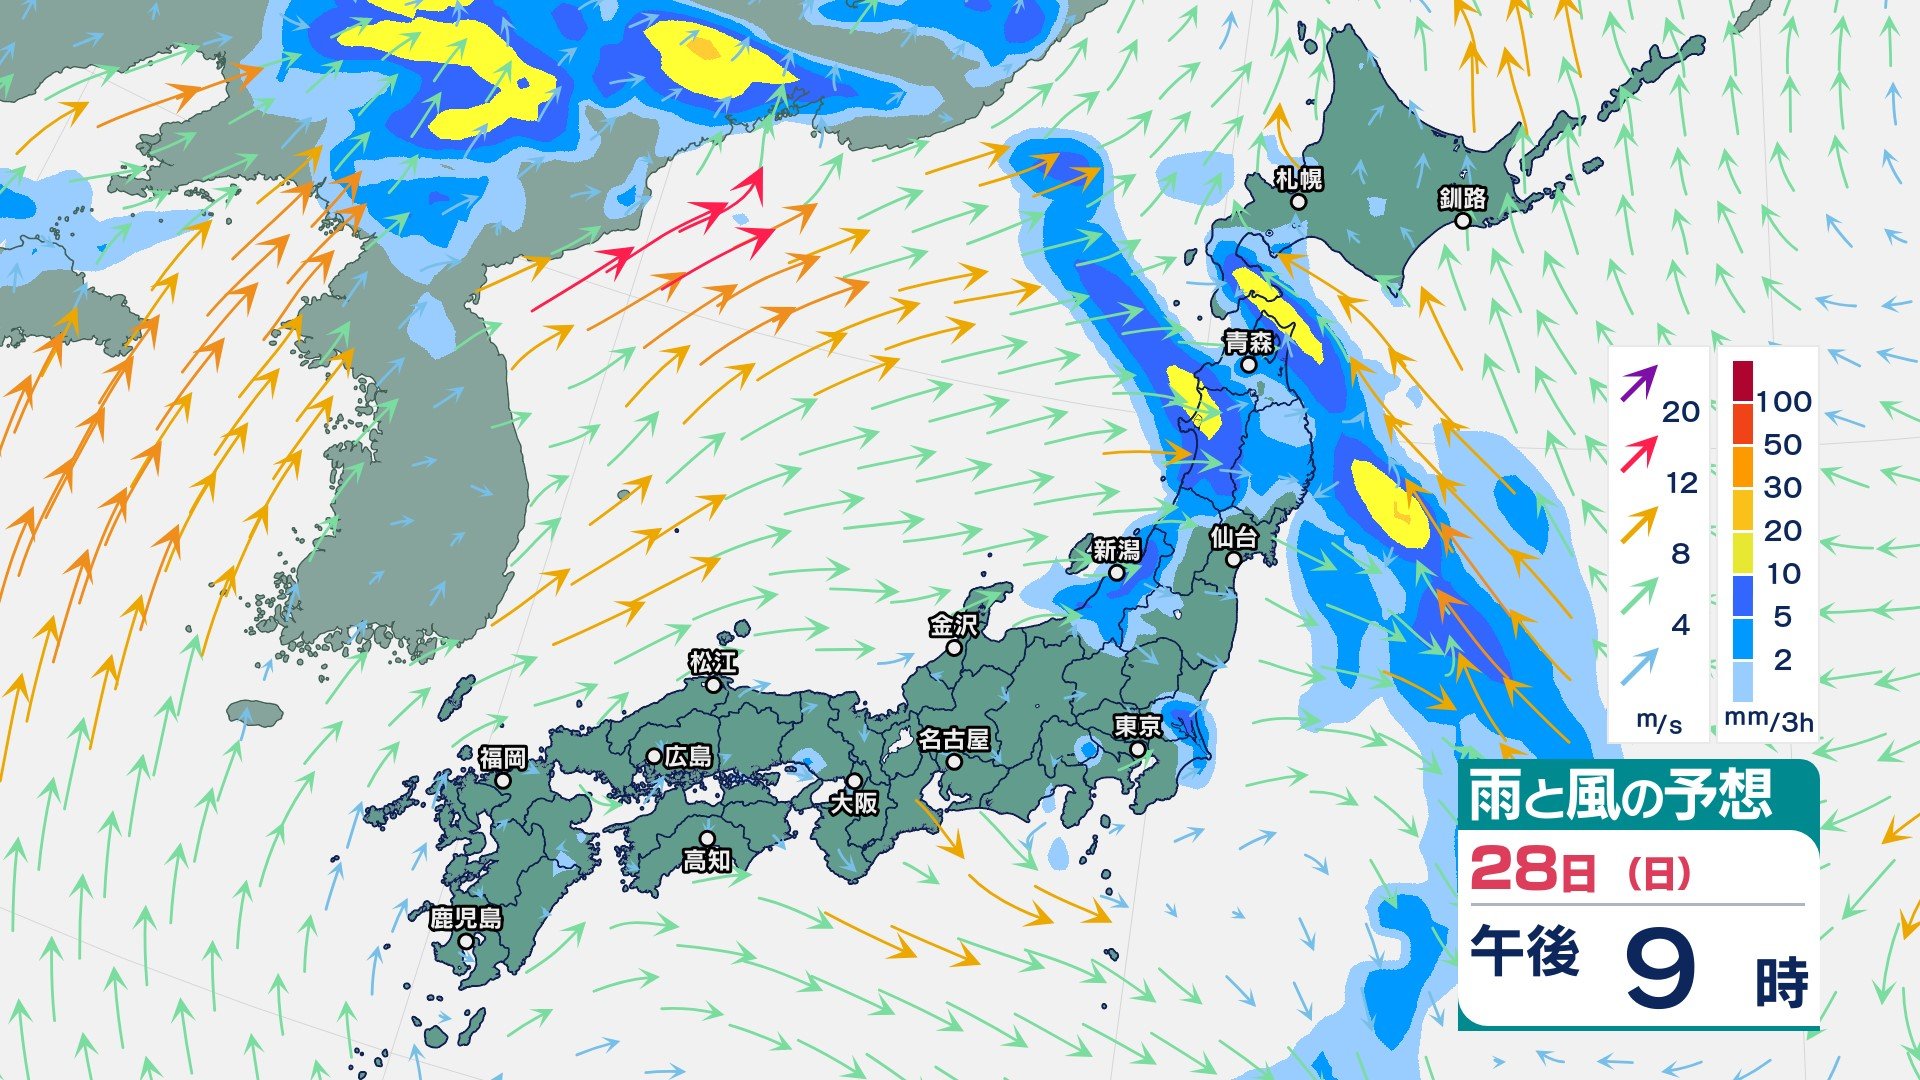 “梅雨末期の大雨”か 東北や新潟県では30日にかけて大雨に　30日朝までに多い所で東北380ミリ、新潟200ミリの降水量予想【今後の雨風シミュレーション】